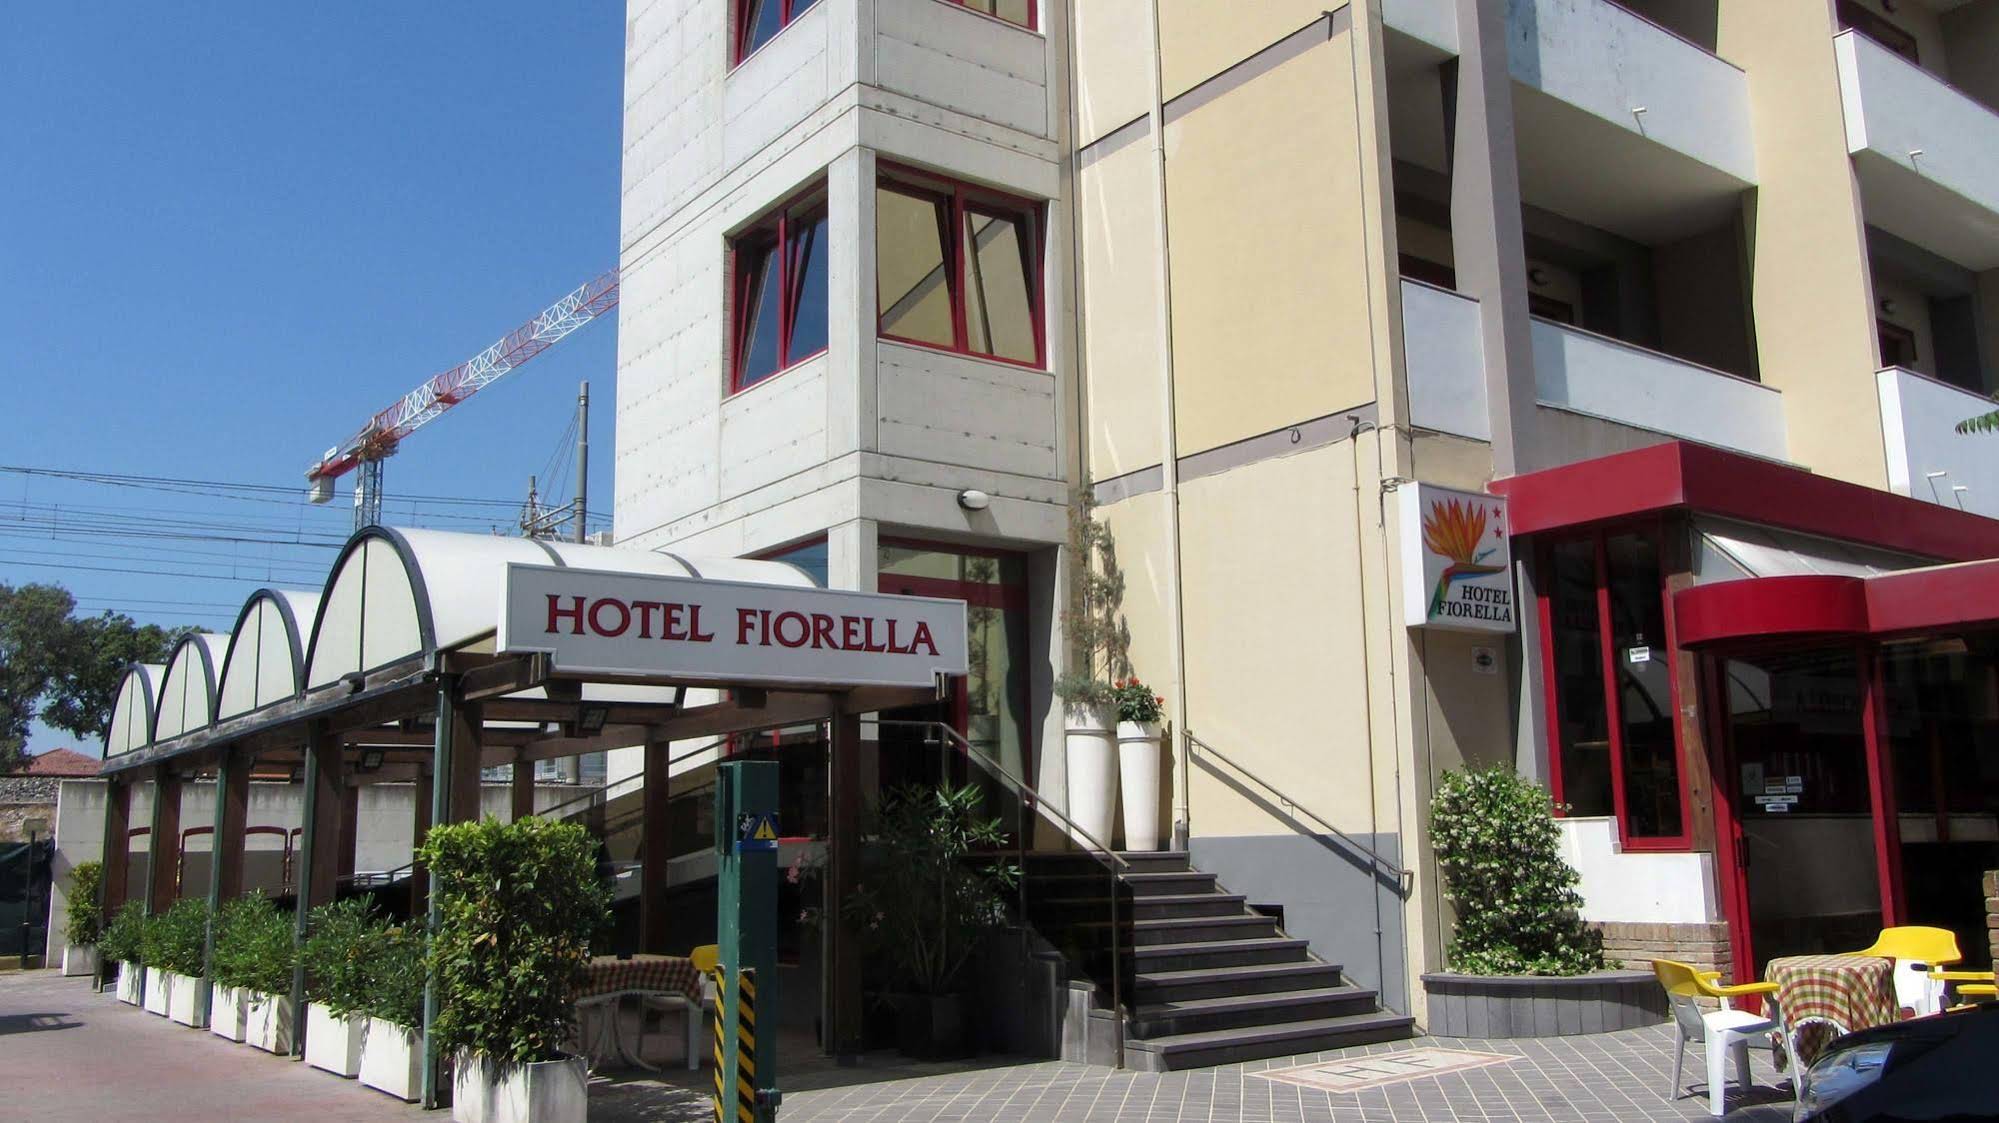 Hotel Fiorella